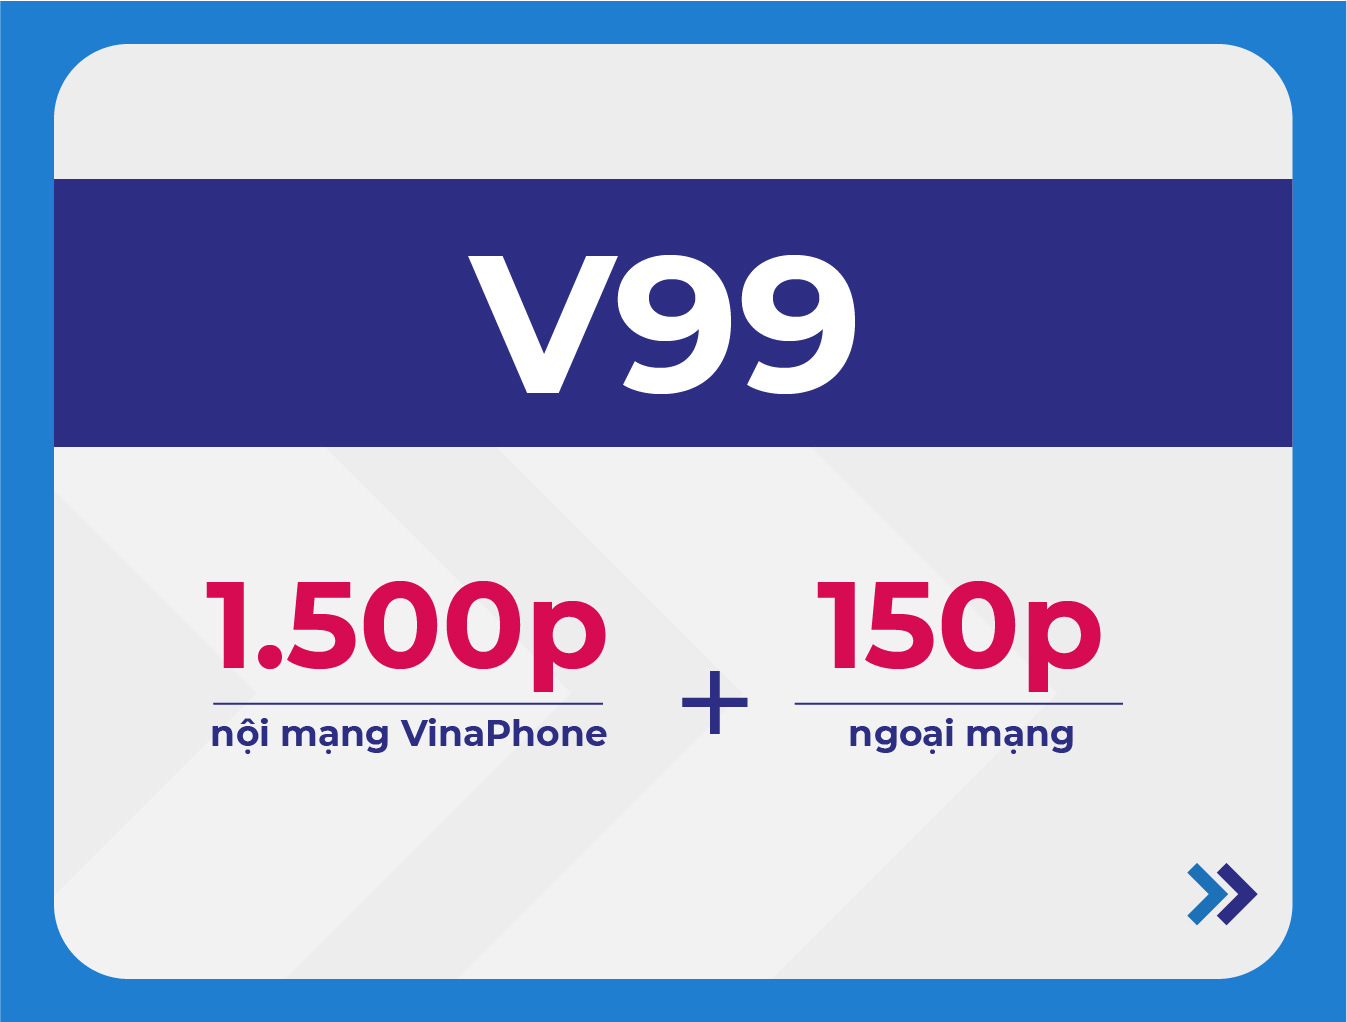 V99 VinaPhone - Gói cước ưu đãi cước thoại của VinaPhone